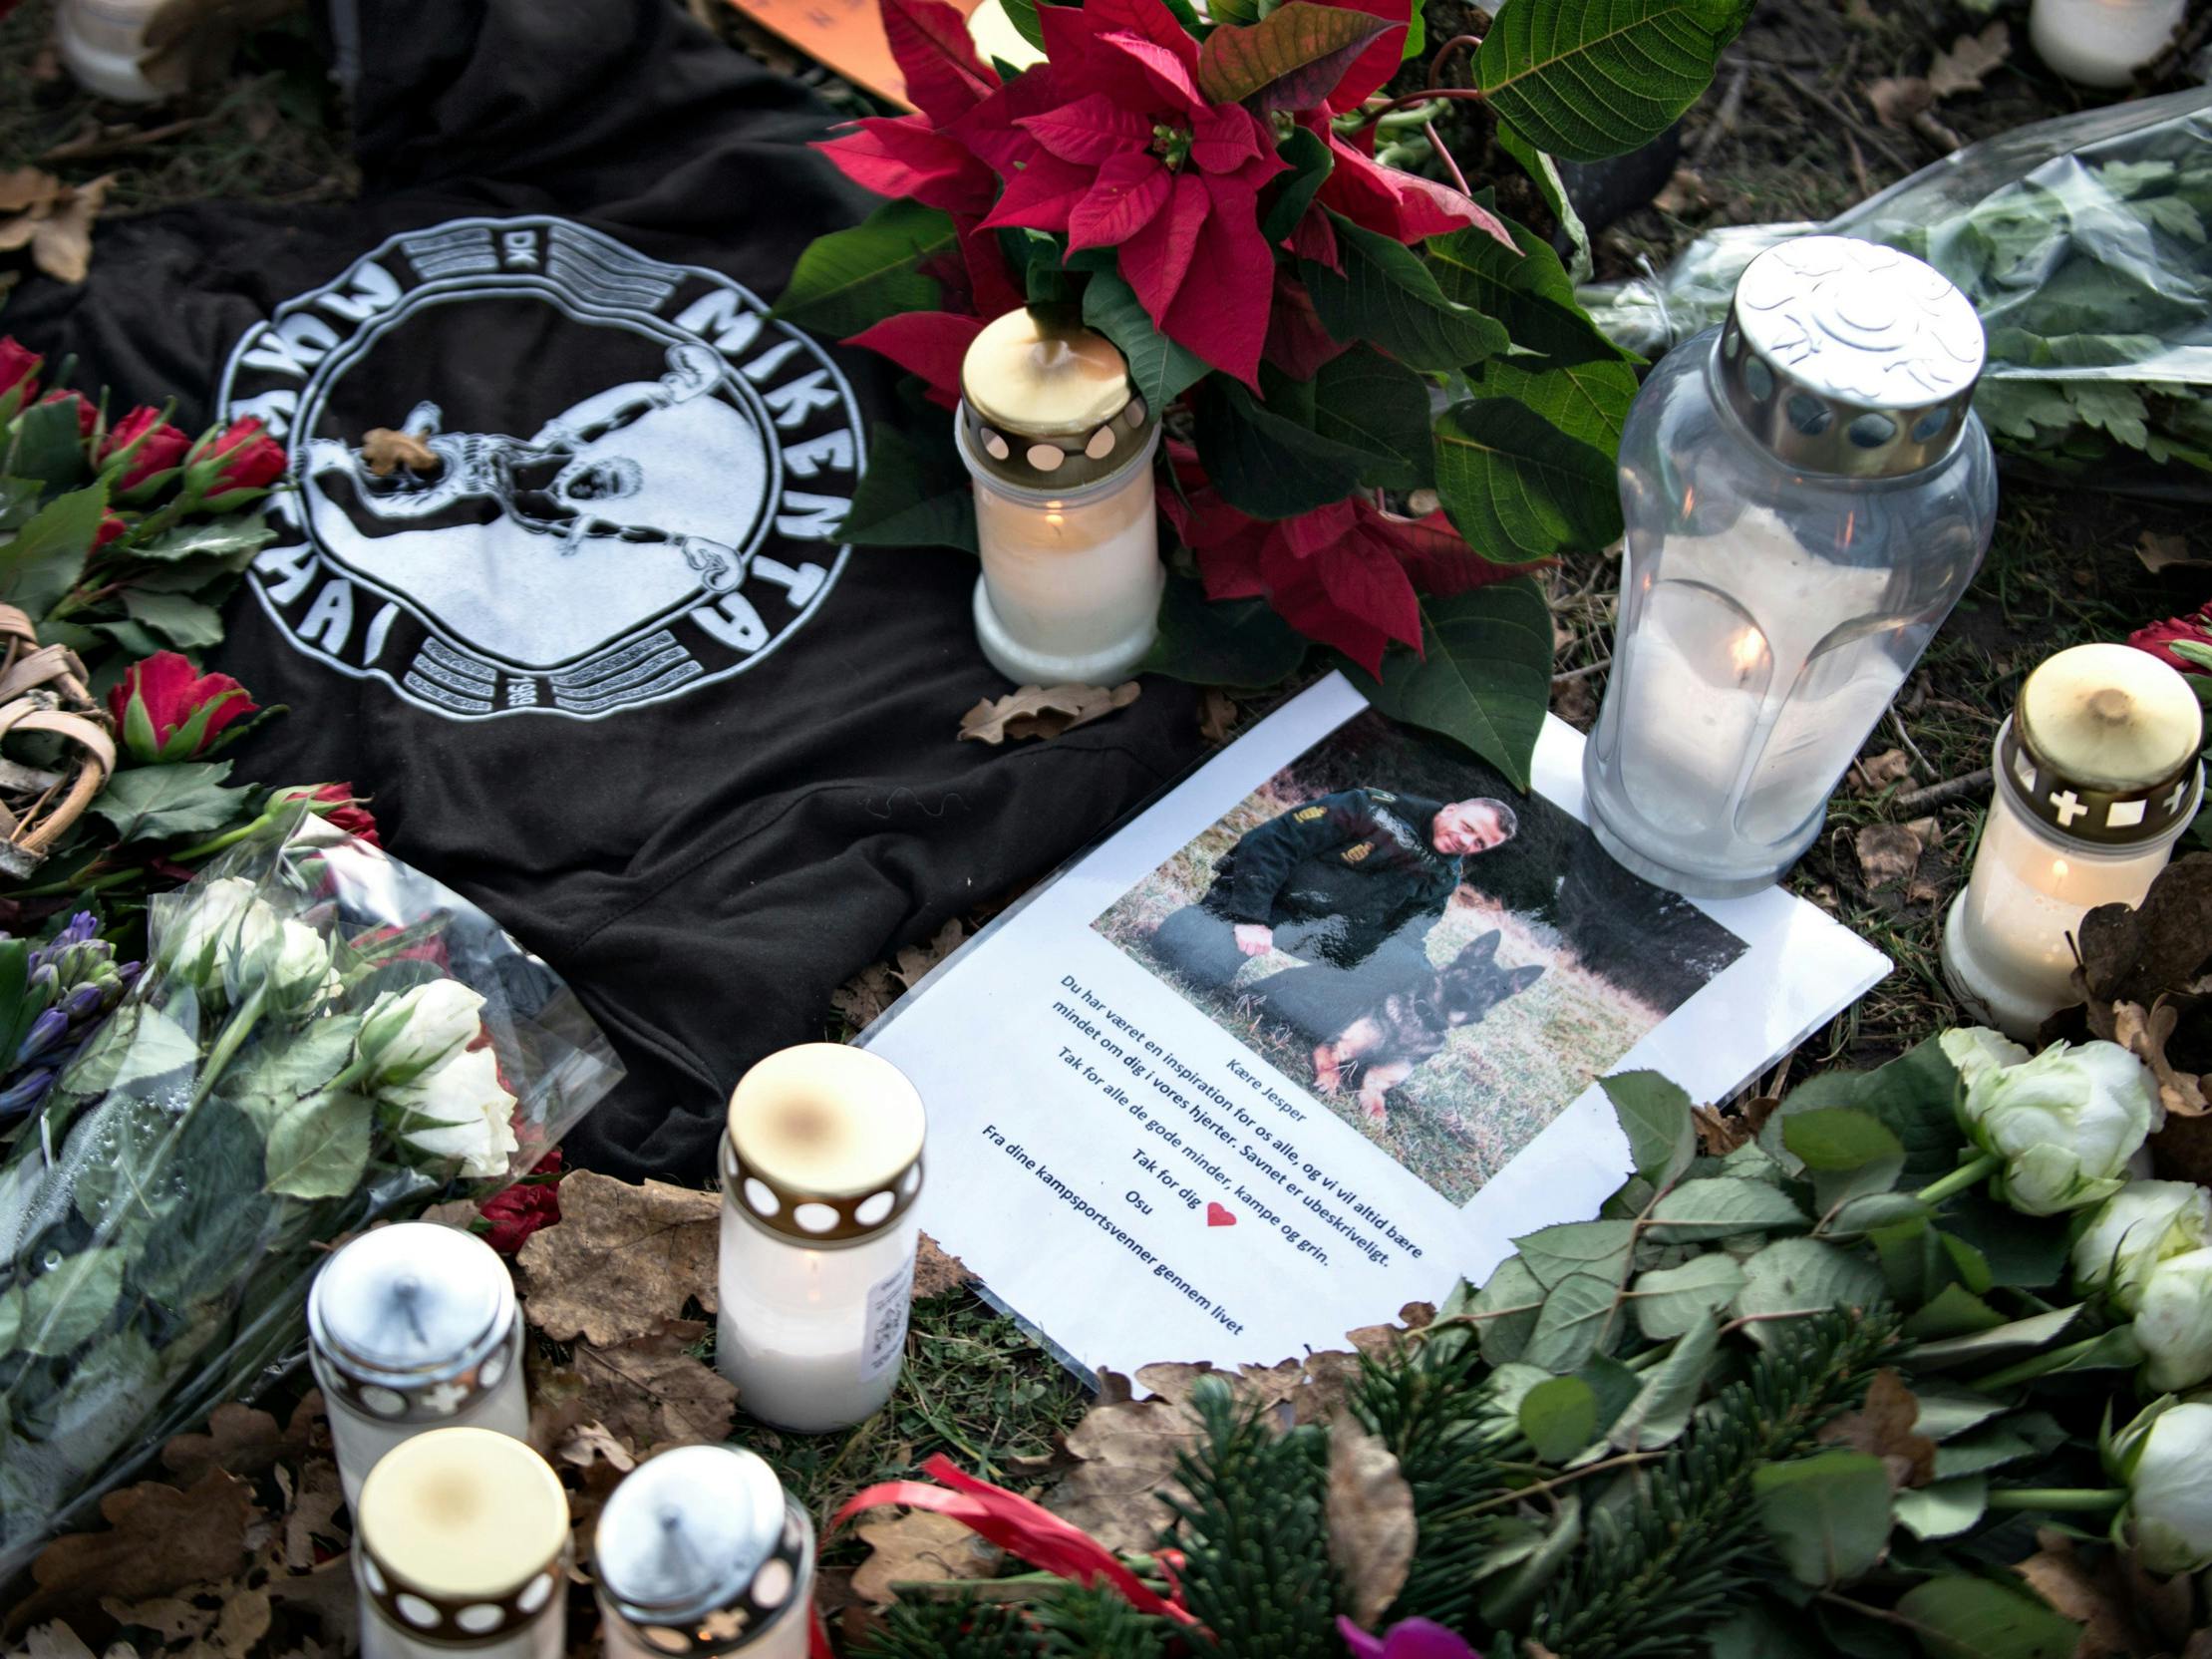 Betjentens kolleger og borgere lagde lys, mindeord og blomster foran politigården i Albertslund ved København, hvor han var blevet dræbt.